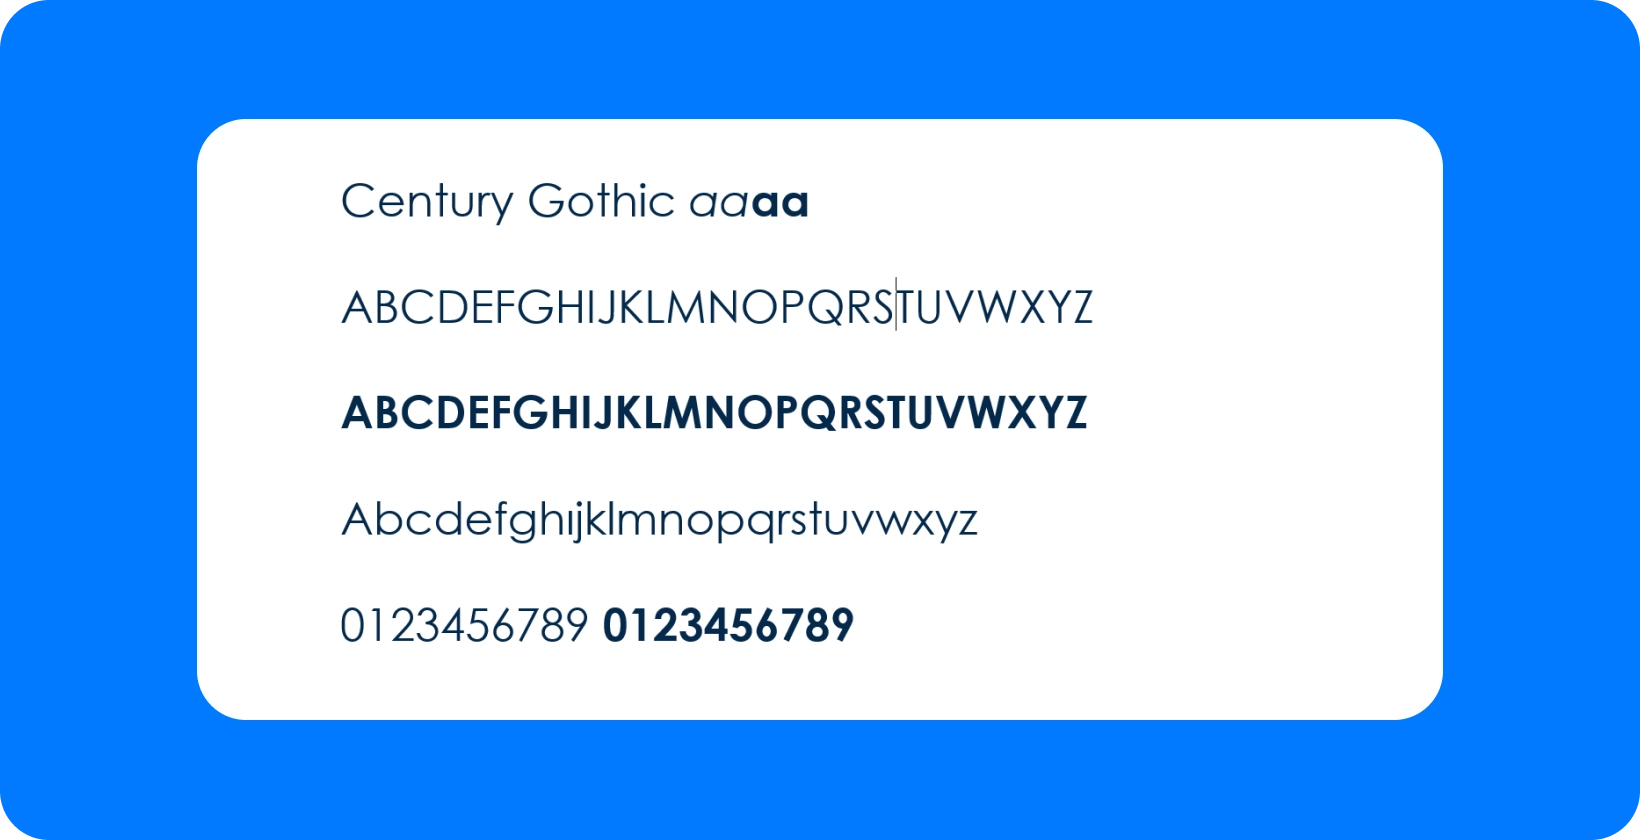 Century Gothic skrifttype tilbyder et moderne, geometrisk udseende til undertekster, perfekt til læsbarhed på YouTube og Premiere Pro.